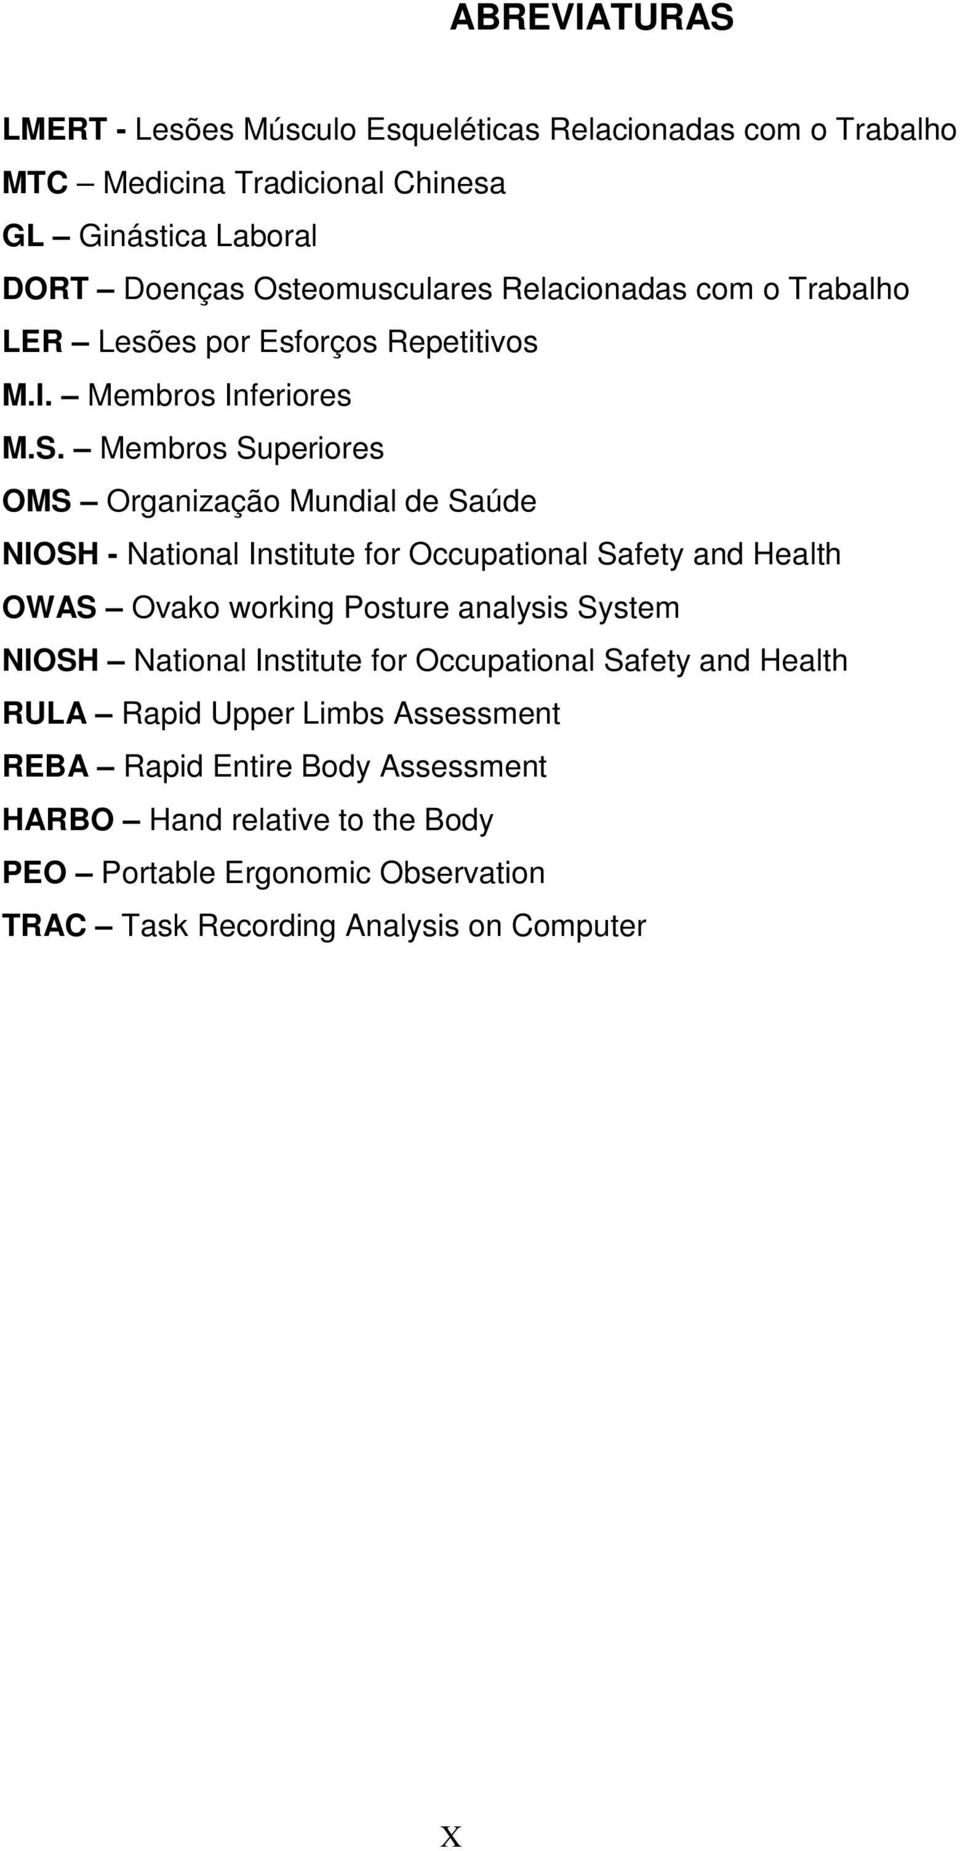 Membros Superiores OMS Organização Mundial de Saúde NIOSH - National Institute for Occupational Safety and Health OWAS Ovako working Posture analysis System